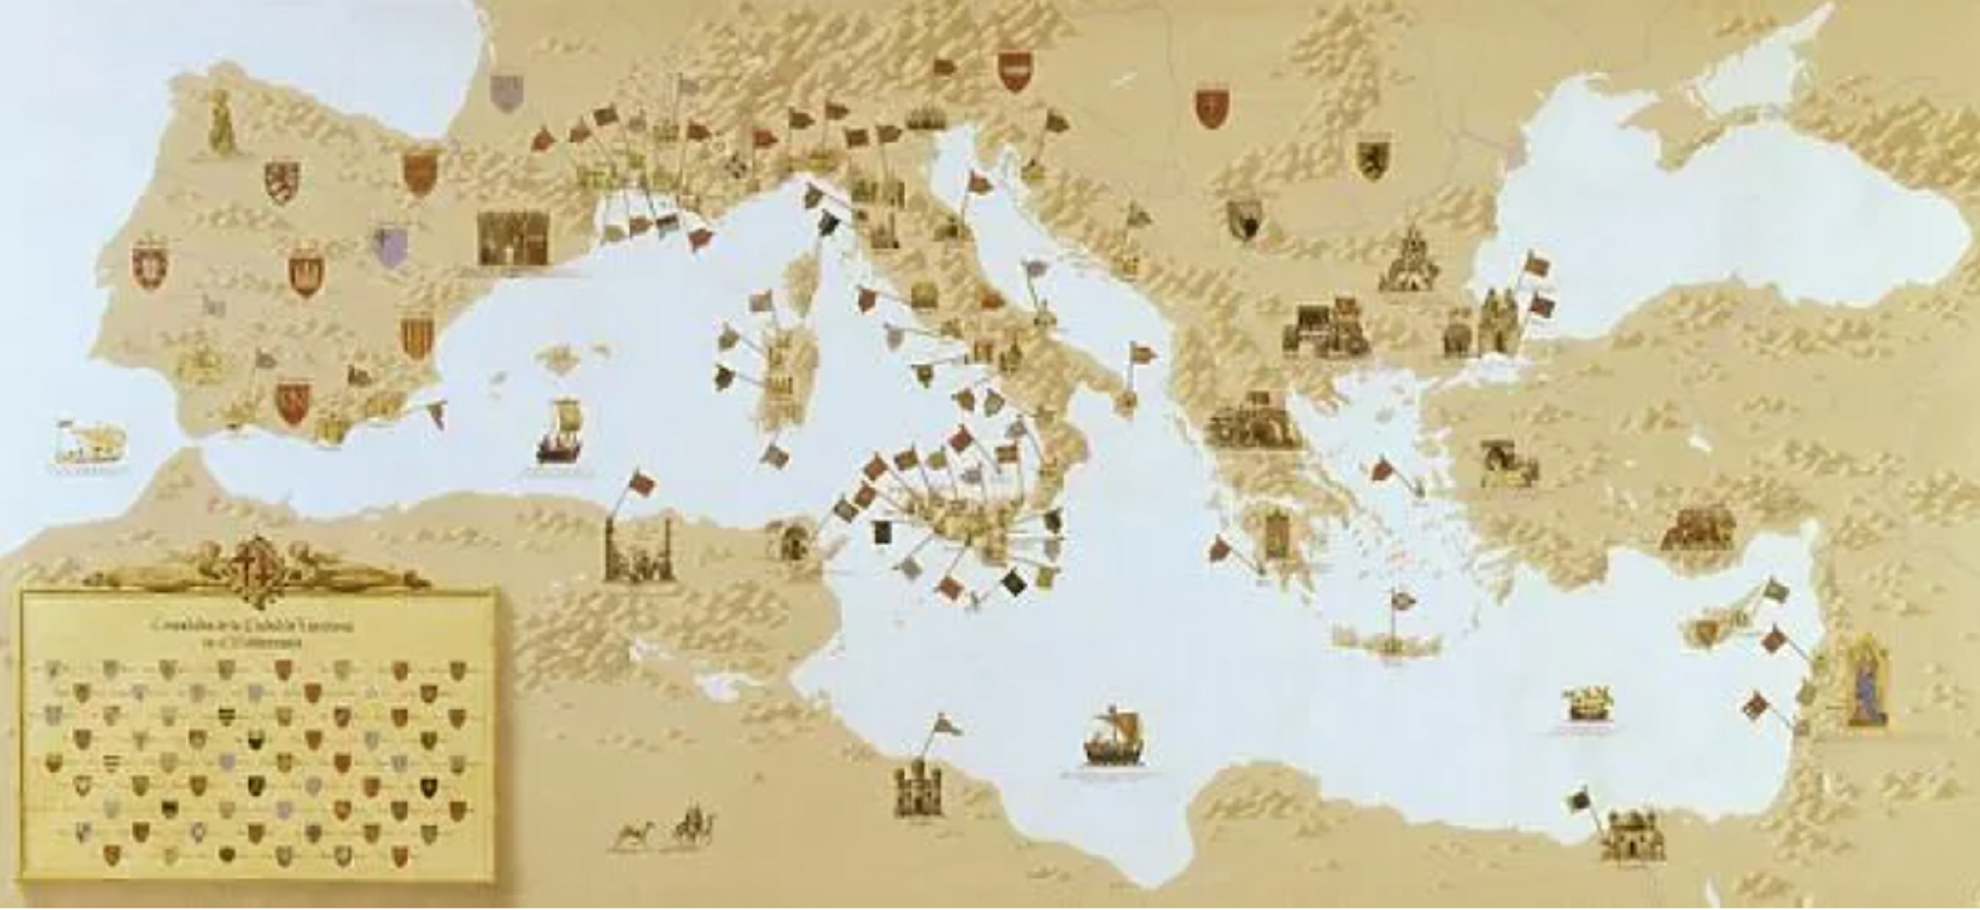 Mapa de los consolados de mar catalanes en el Mediterráneo / Fuente: Museu Marítim de Barcelona